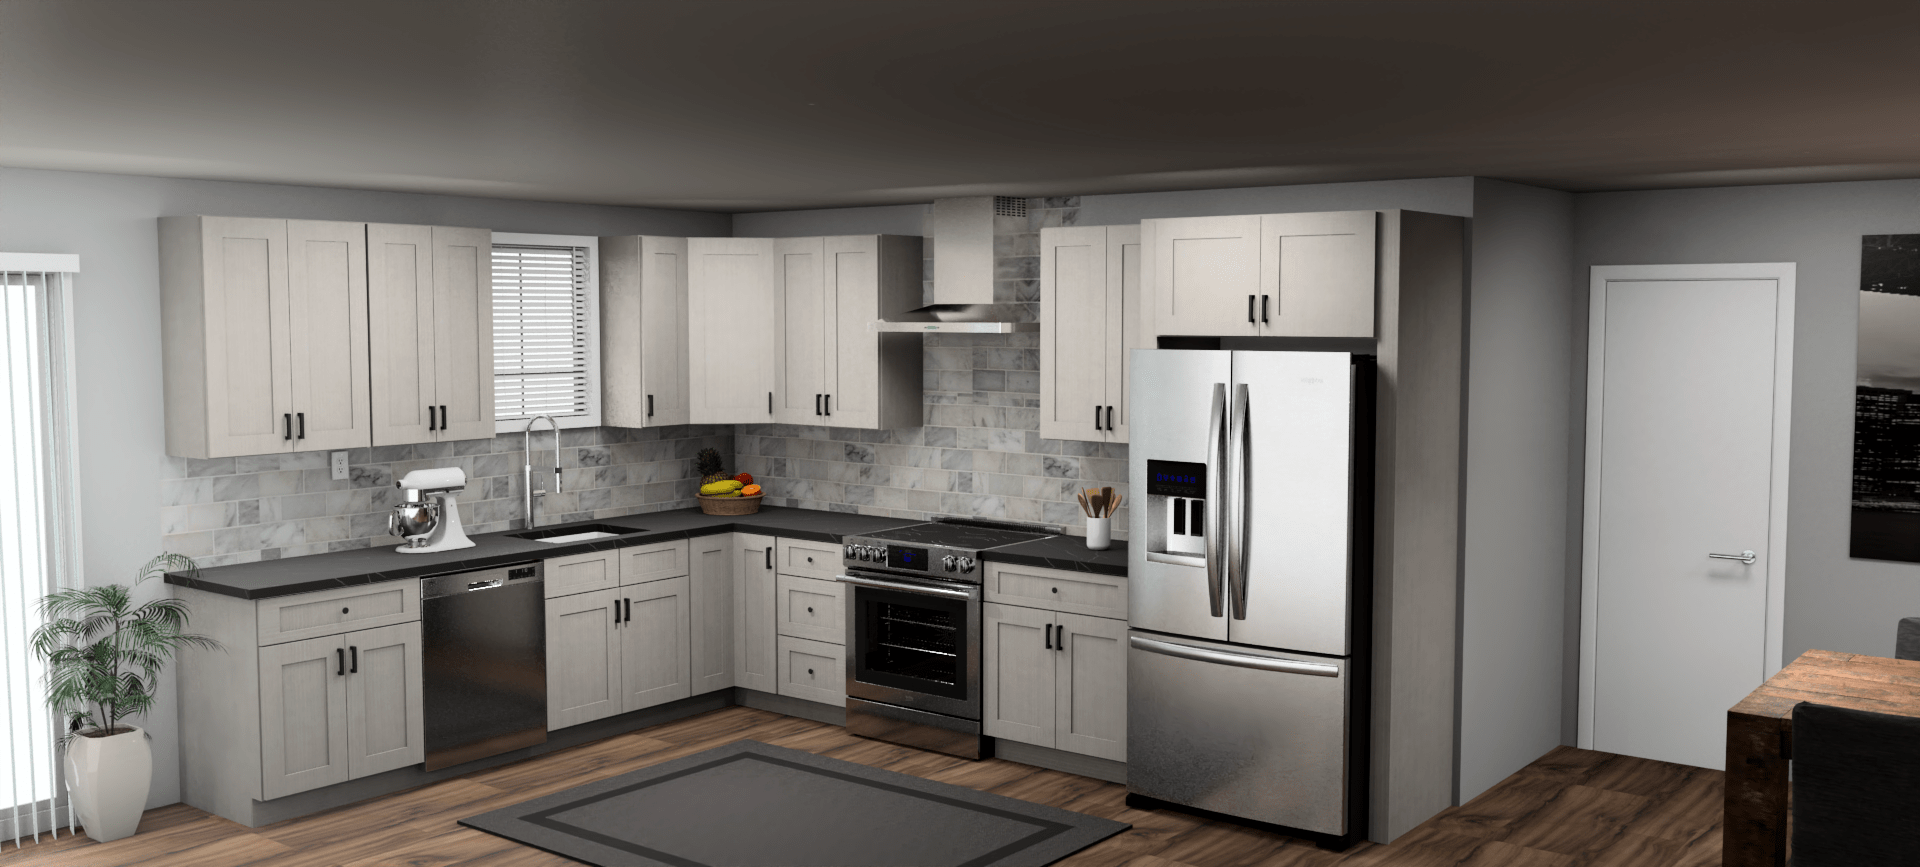 Fabuwood Allure Galaxy Horizon 10 x 13 L Shaped Kitchen Main Layout Photo